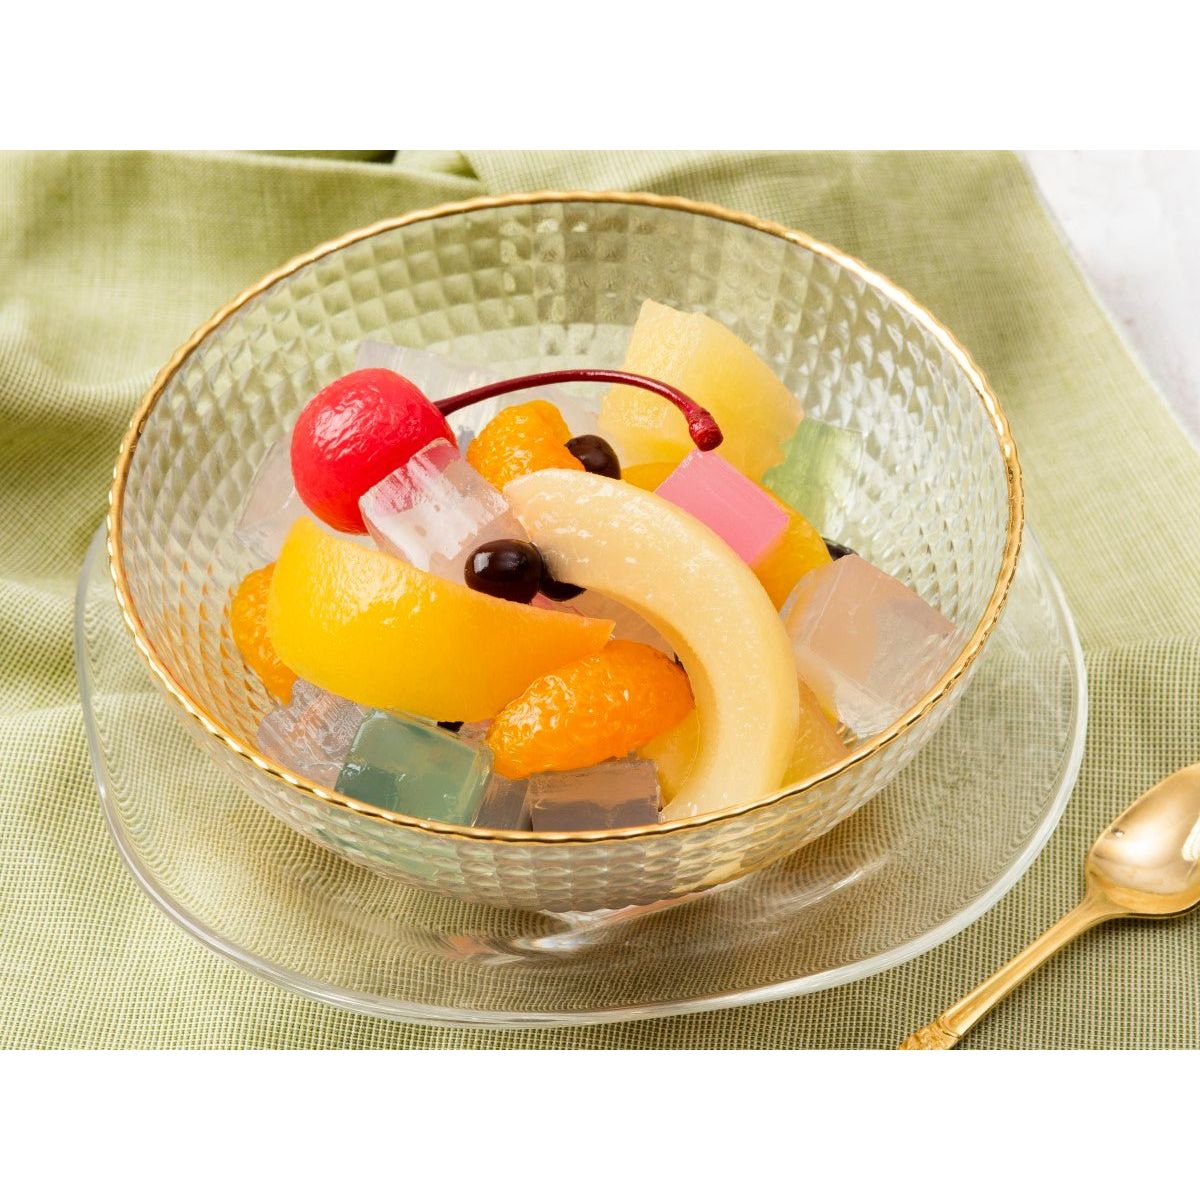 K&K Fruit Mitsu Beans (5 types de fruits, gélose, gousses rouges)